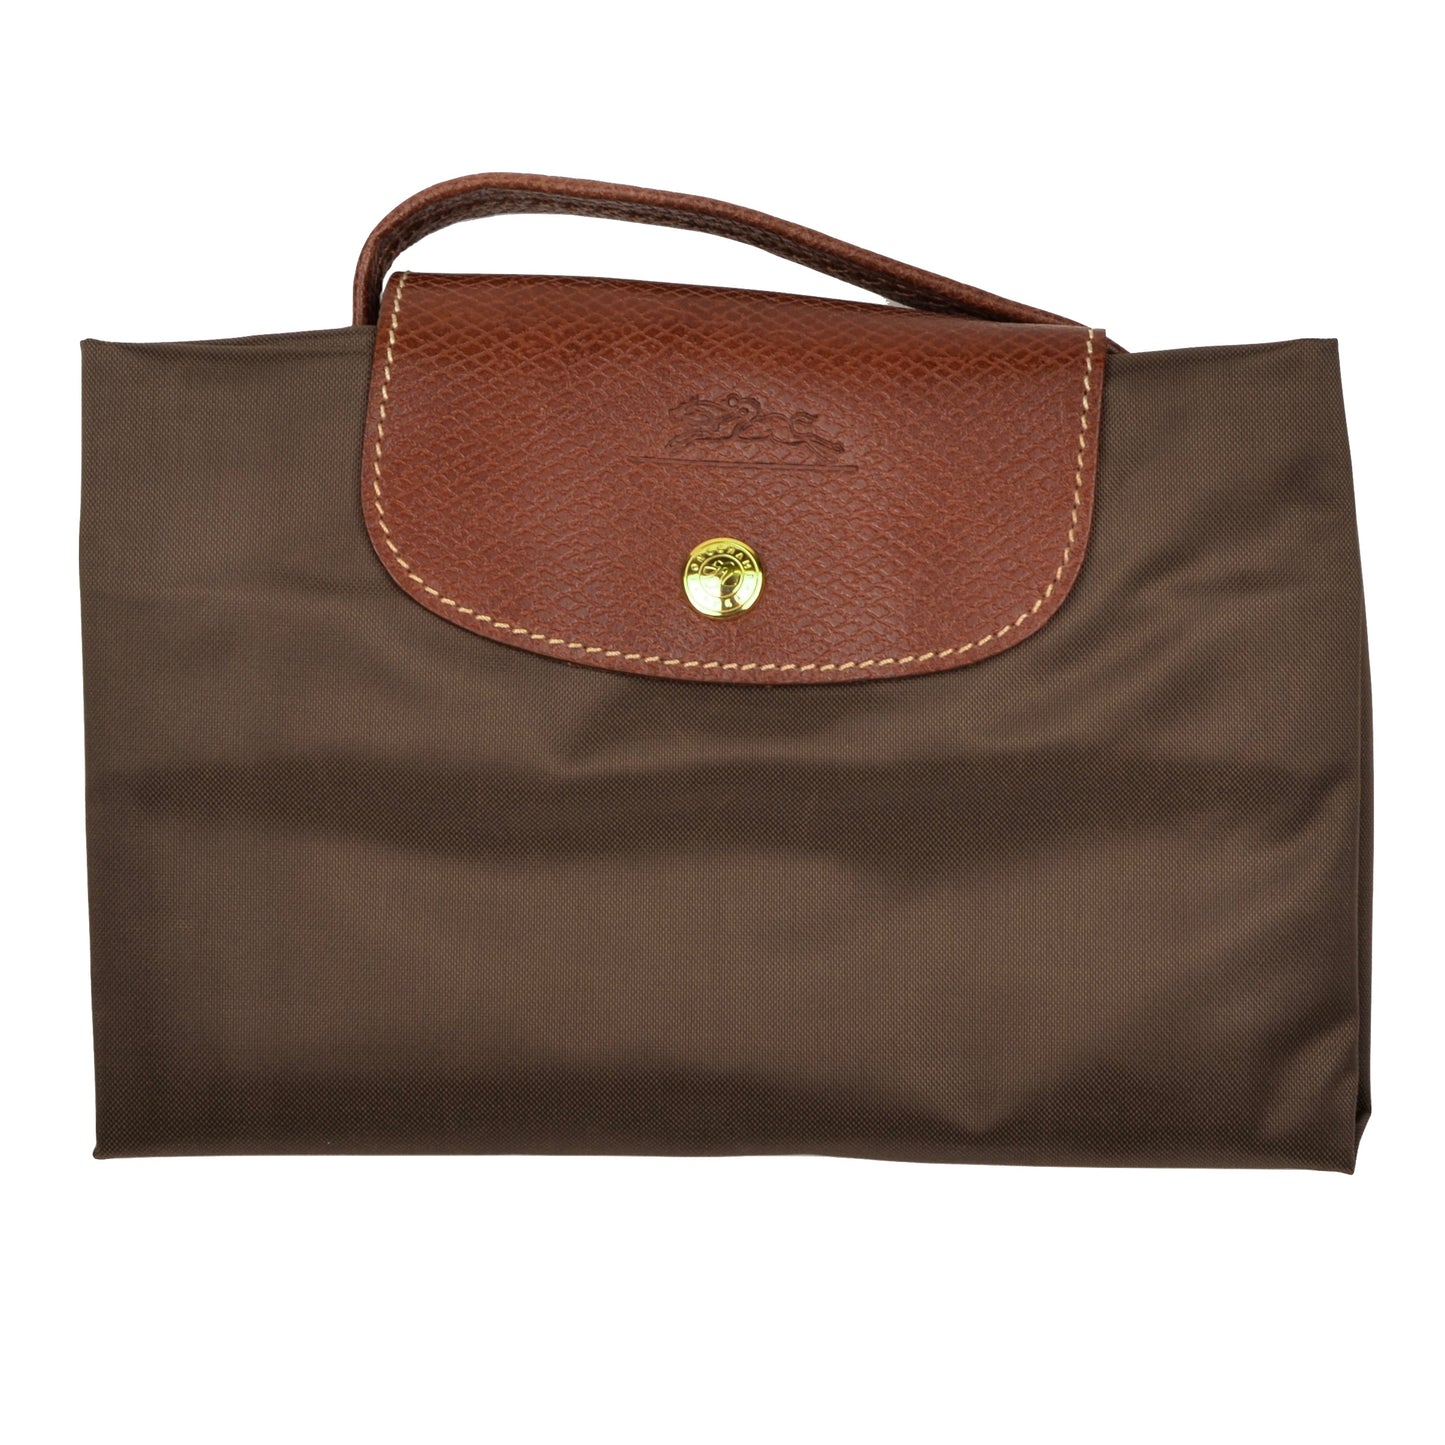 Longchamp Paris Les Pliage Bag "Docs" - Olive Brown